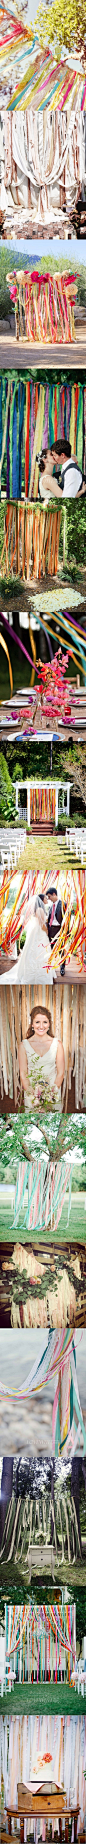 #婚礼布置#多彩丝带装饰的婚礼细节，从拱门、仪式背景墙到各种吊饰，让你的婚礼变得更加别致个性哈~ 更多: http://www.lovewith.me/share/detail/all/30171